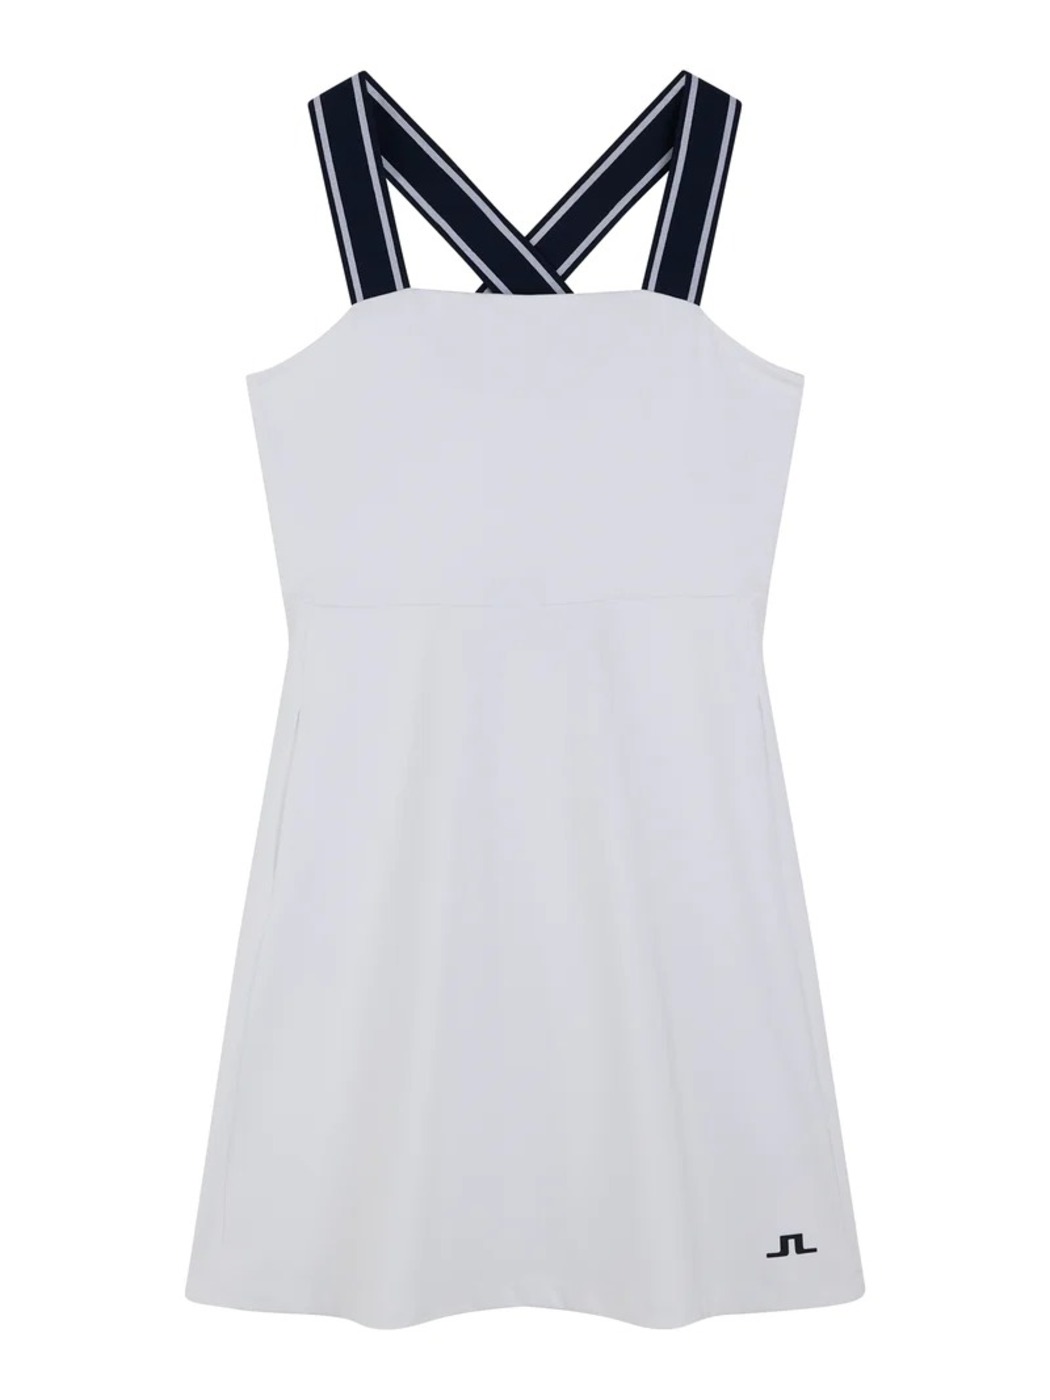 제이린드버그 SS 여성 테니스 원피스  모나 드레스 화이트 MONA DRESS